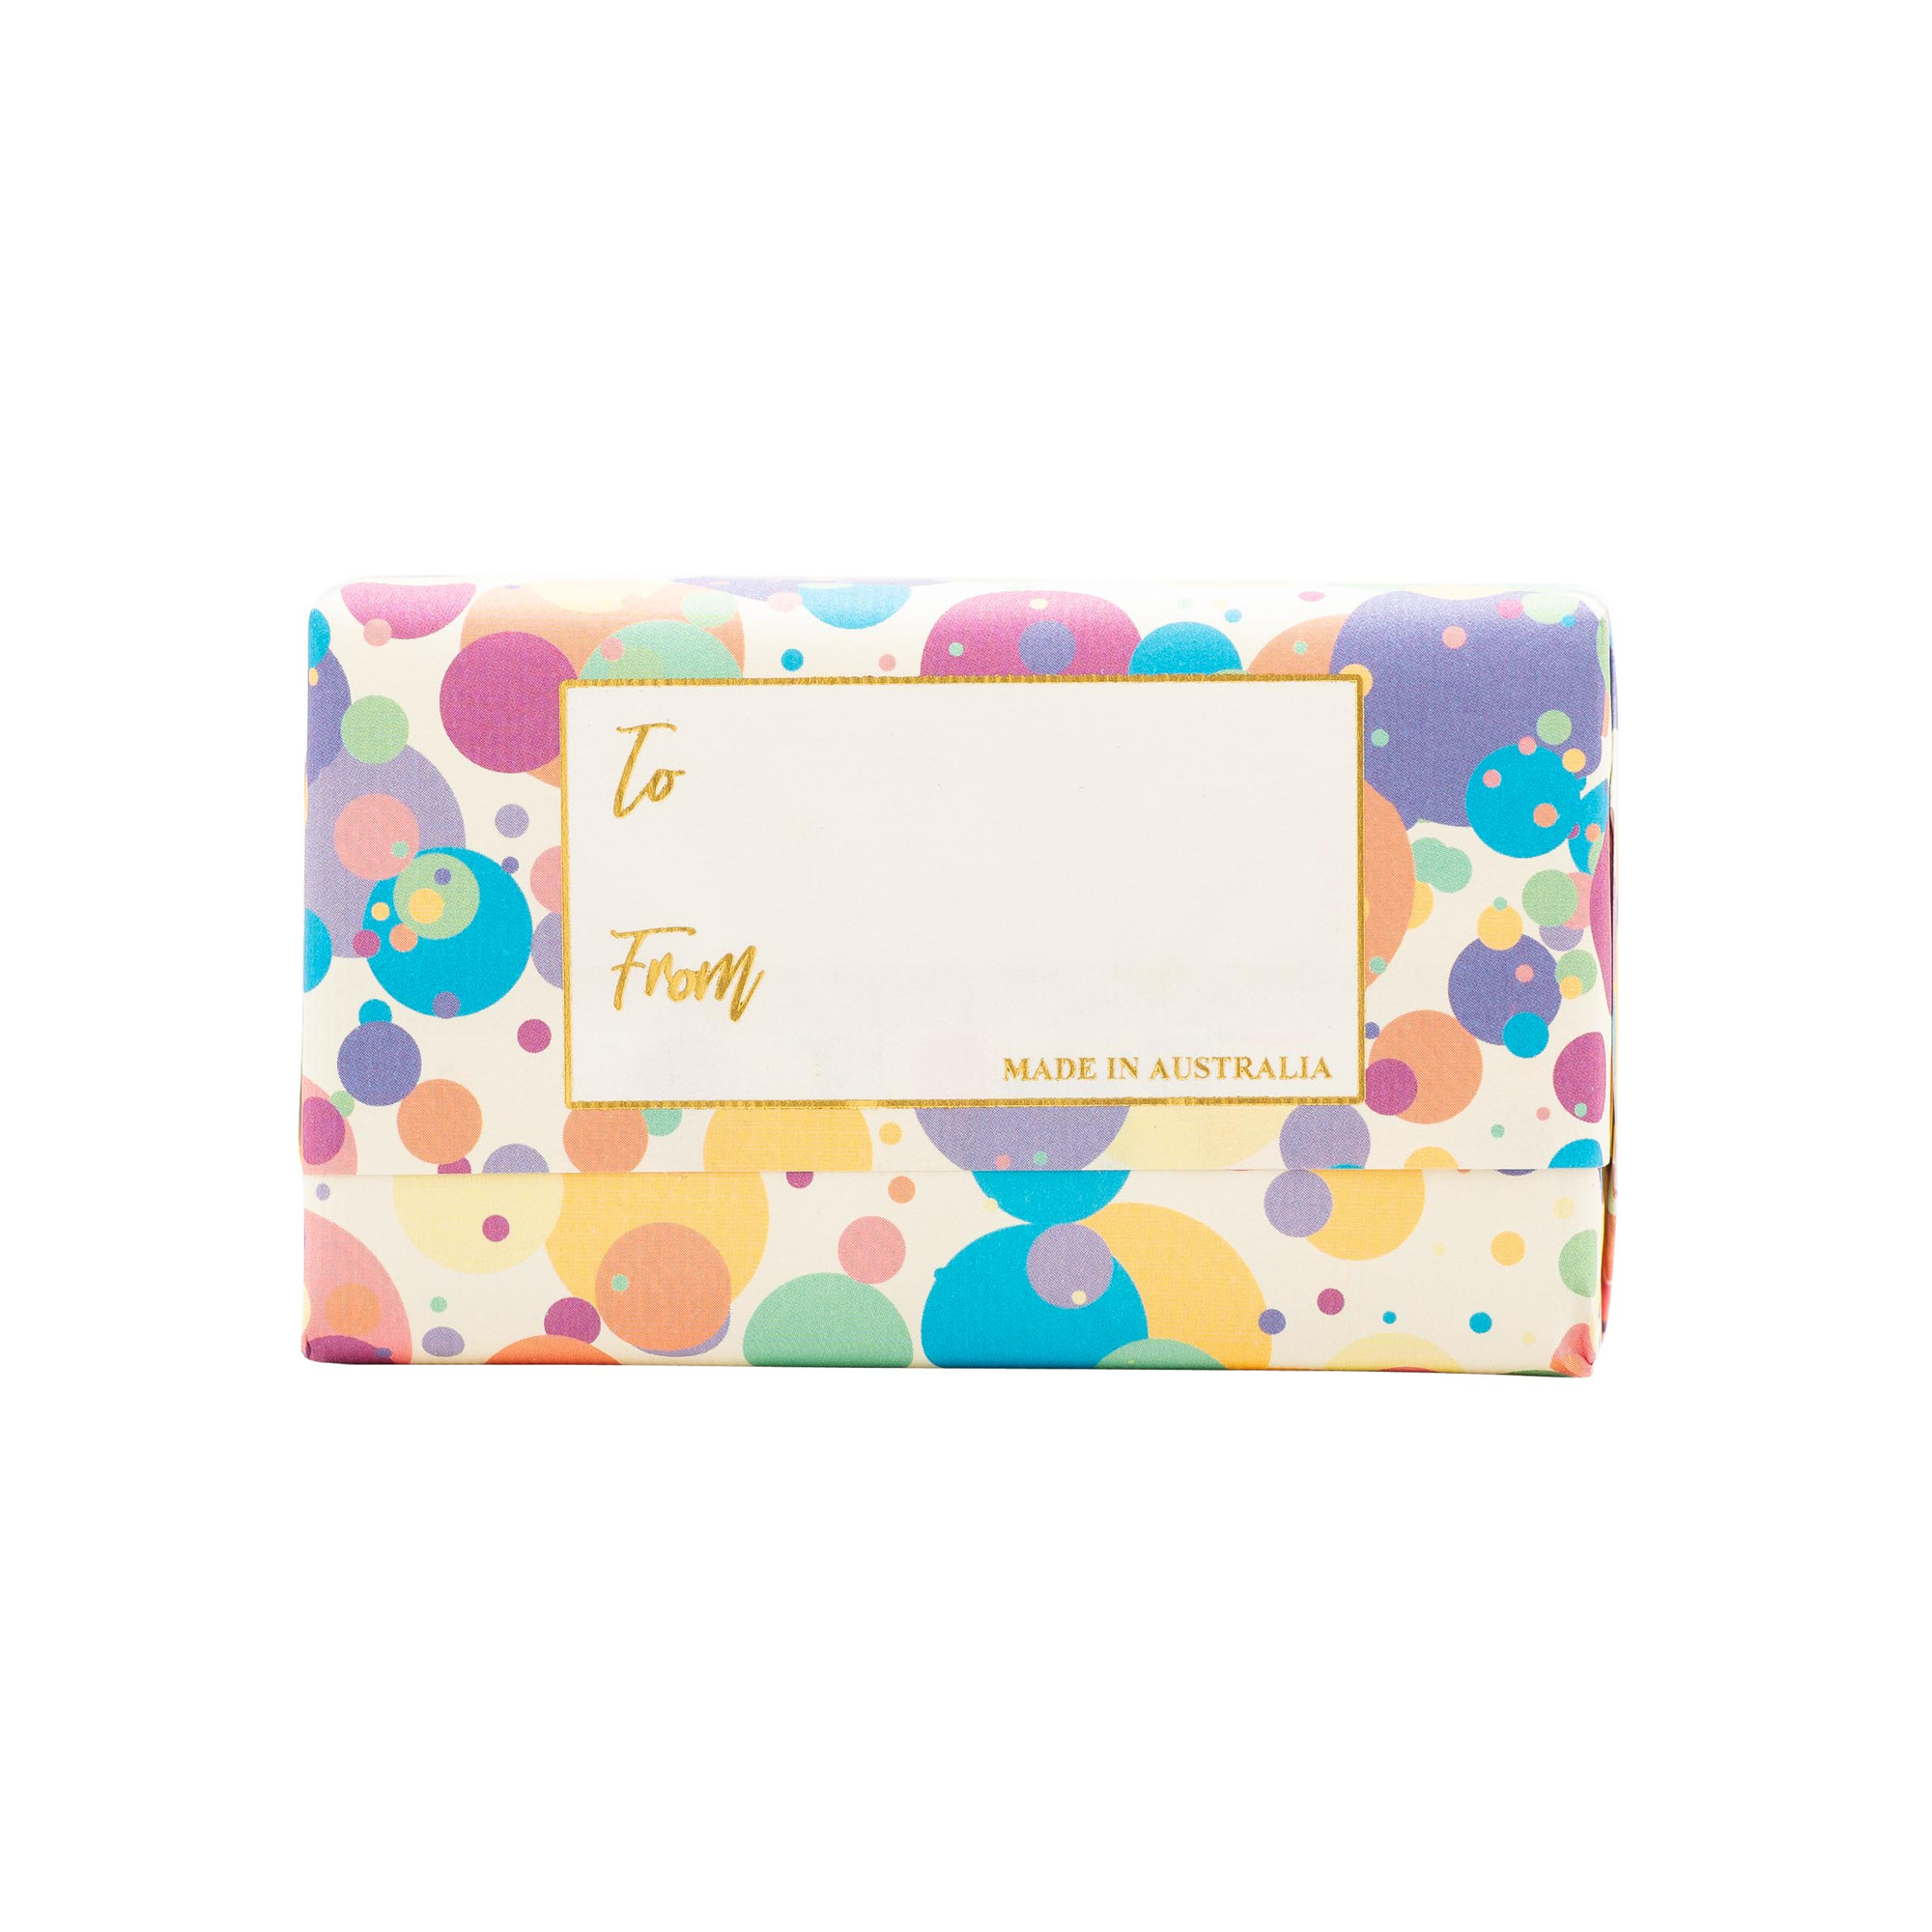 Happy Birthday Confetti - French Pear Fragrance Soap Bar Carton 8x200g